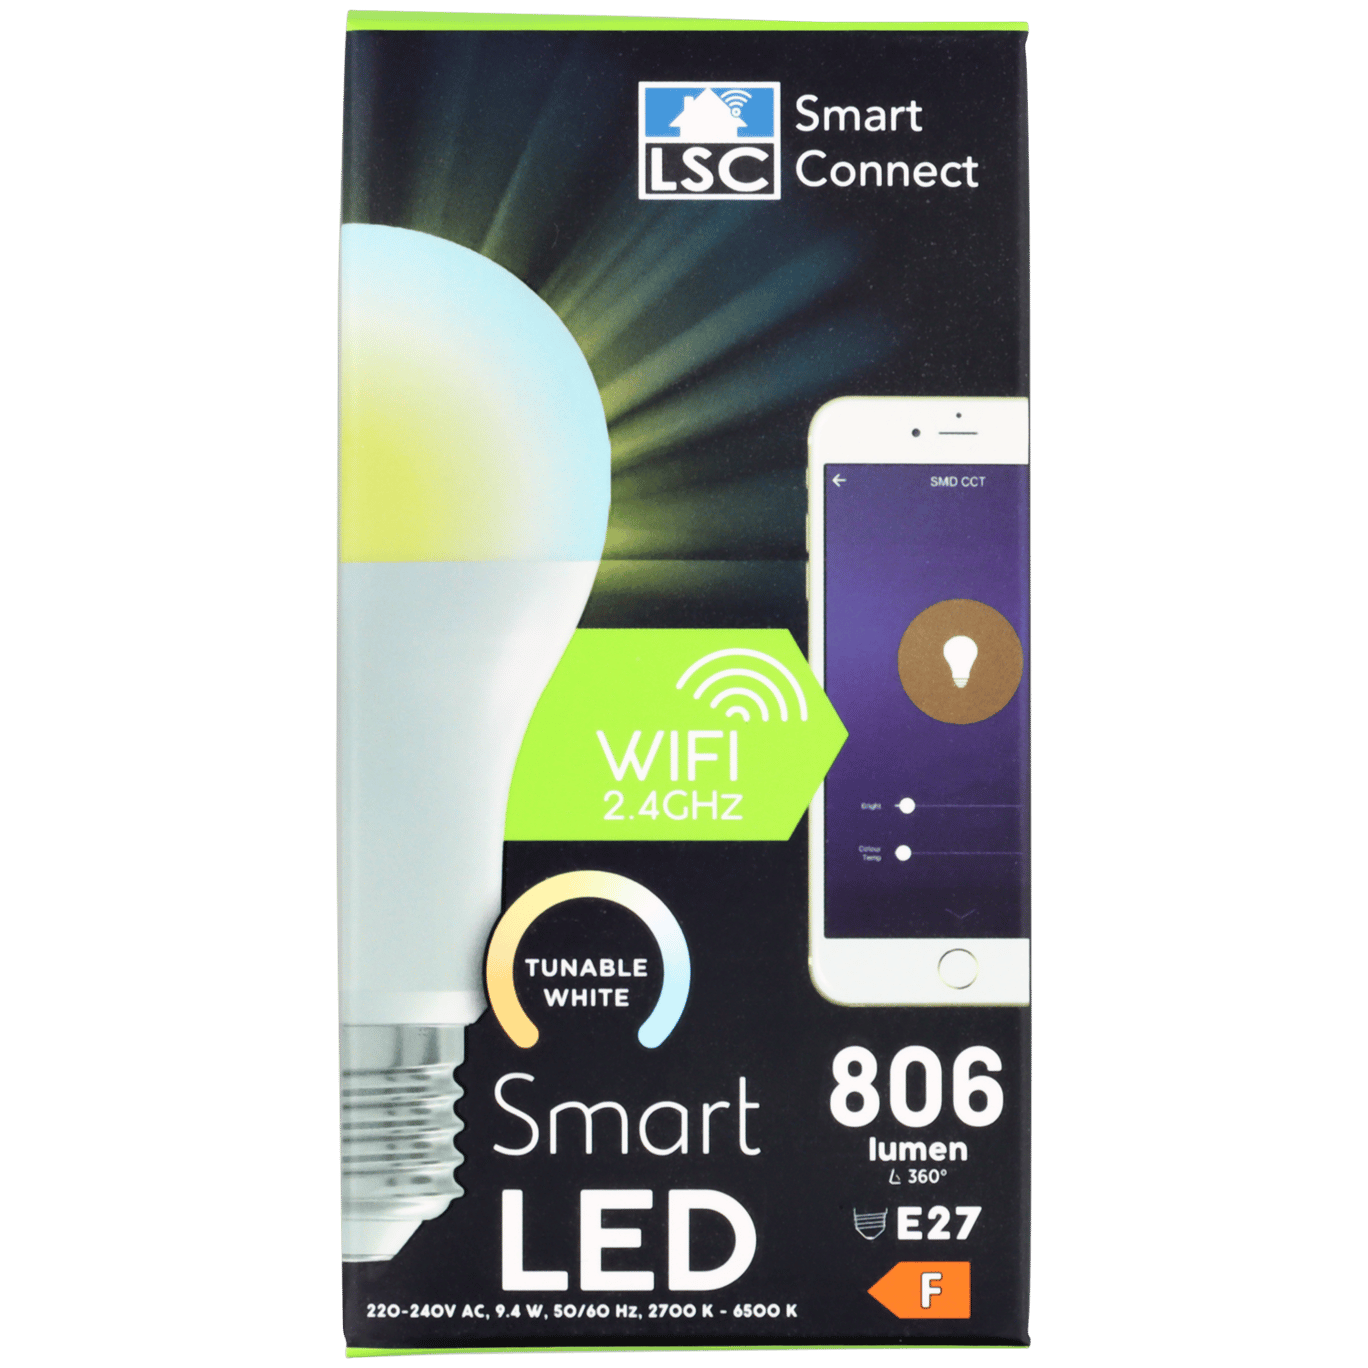 Connect slimme ledlamp | Action.com